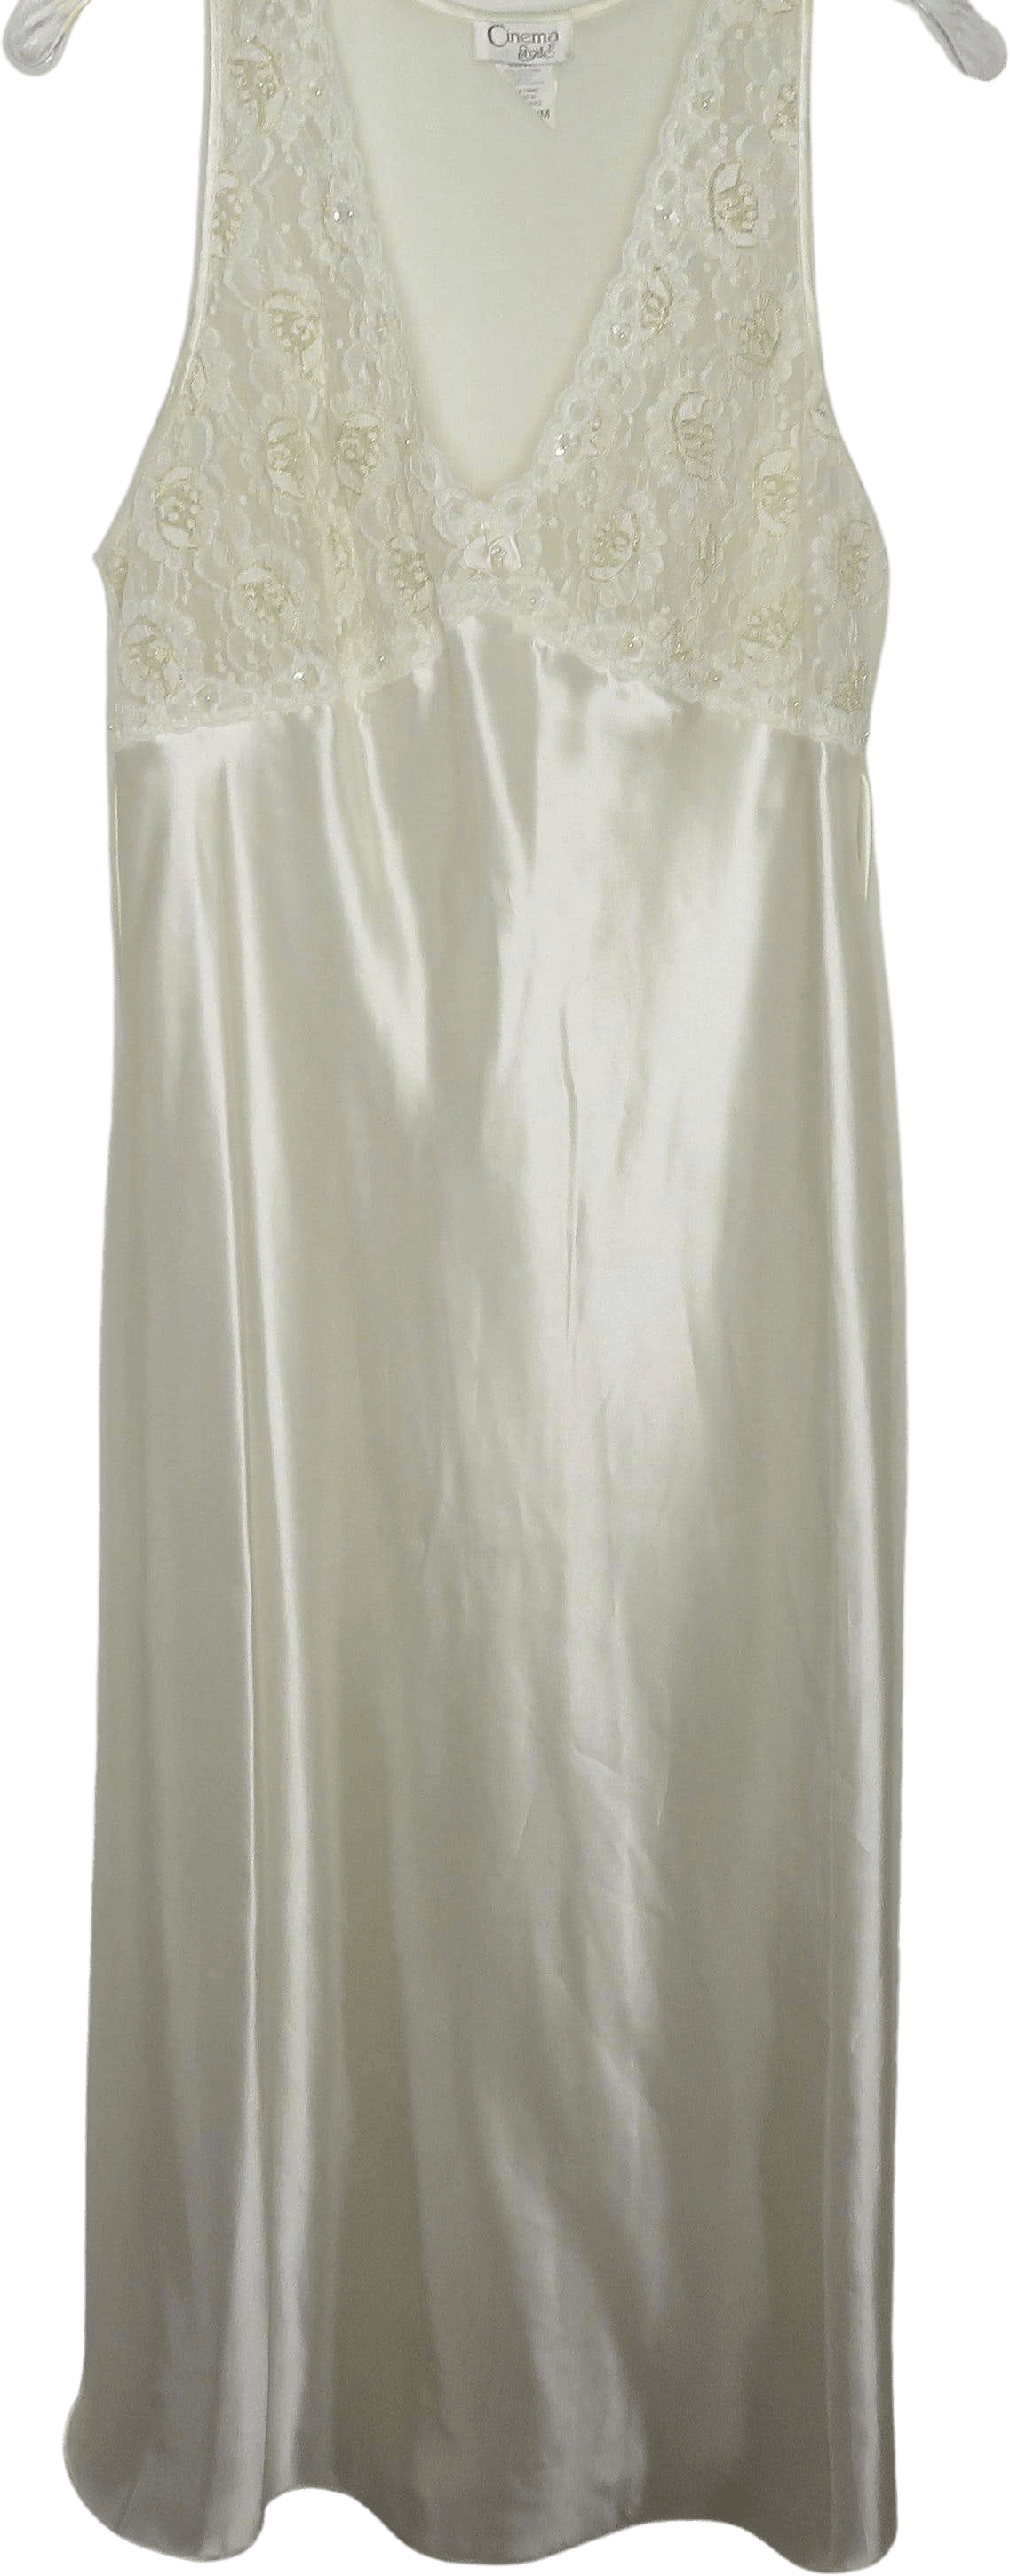 Vintage White Satin Cinema Etoile Nightgown by Cinema Exoile - Free ...